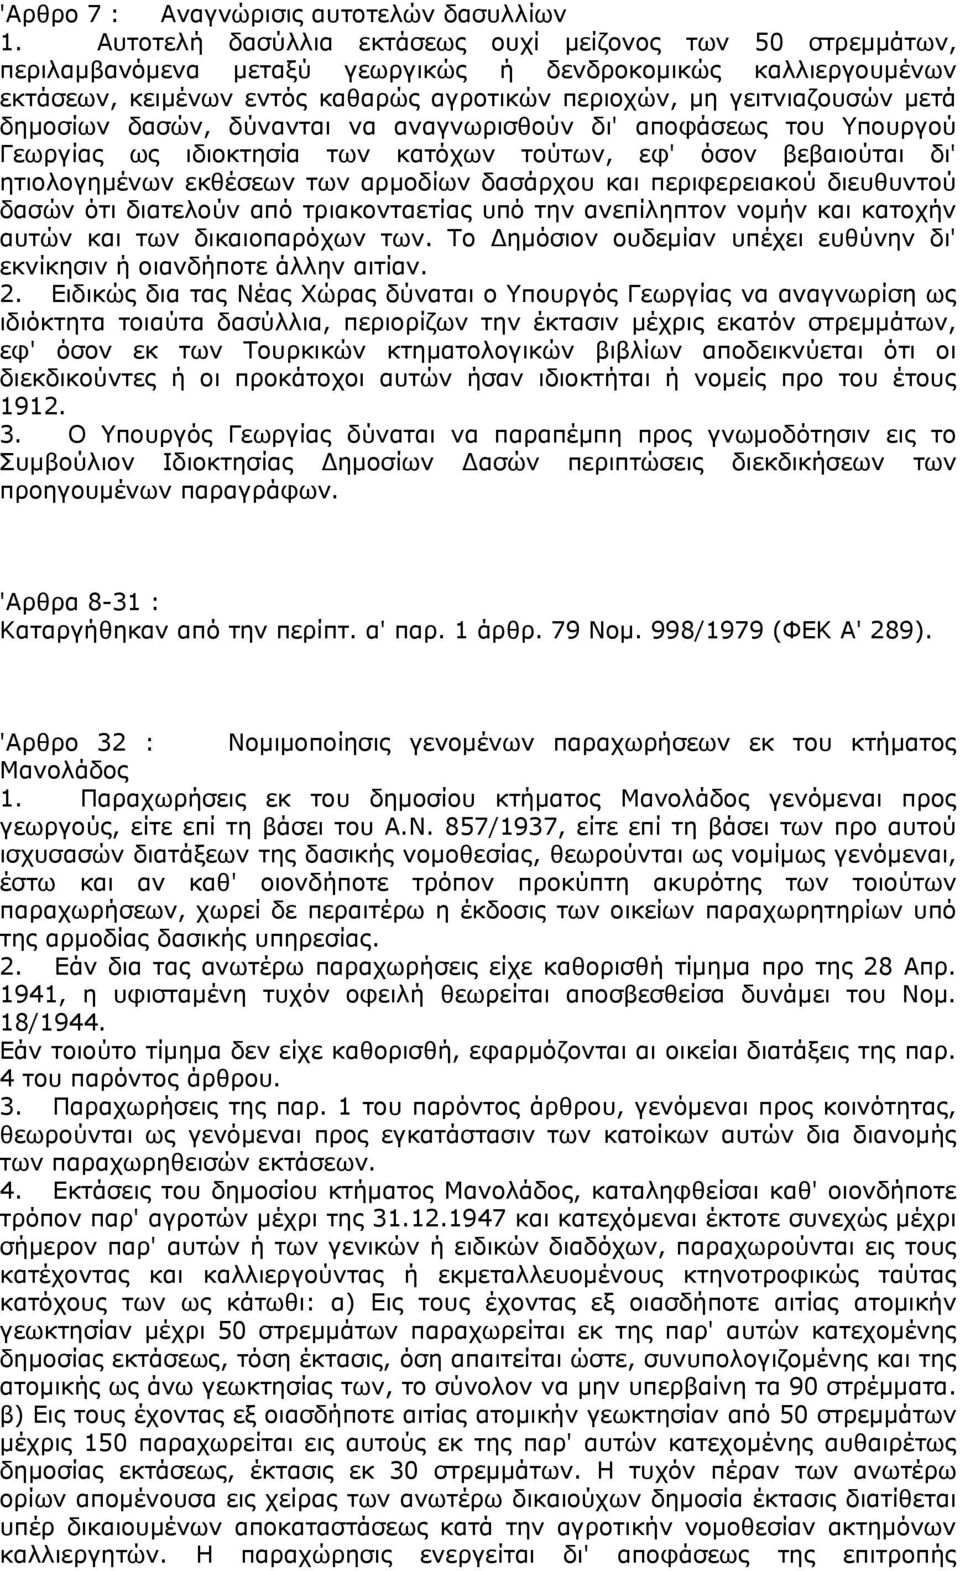 δημοσίων δασών, δύνανται να αναγνωρισθούν δι' αποφάσεως του Υπουργού Γεωργίας ως ιδιοκτησία των κατόχων τούτων, εφ' όσον βεβαιούται δι' ητιολογημένων εκθέσεων των αρμοδίων δασάρχου και περιφερειακού